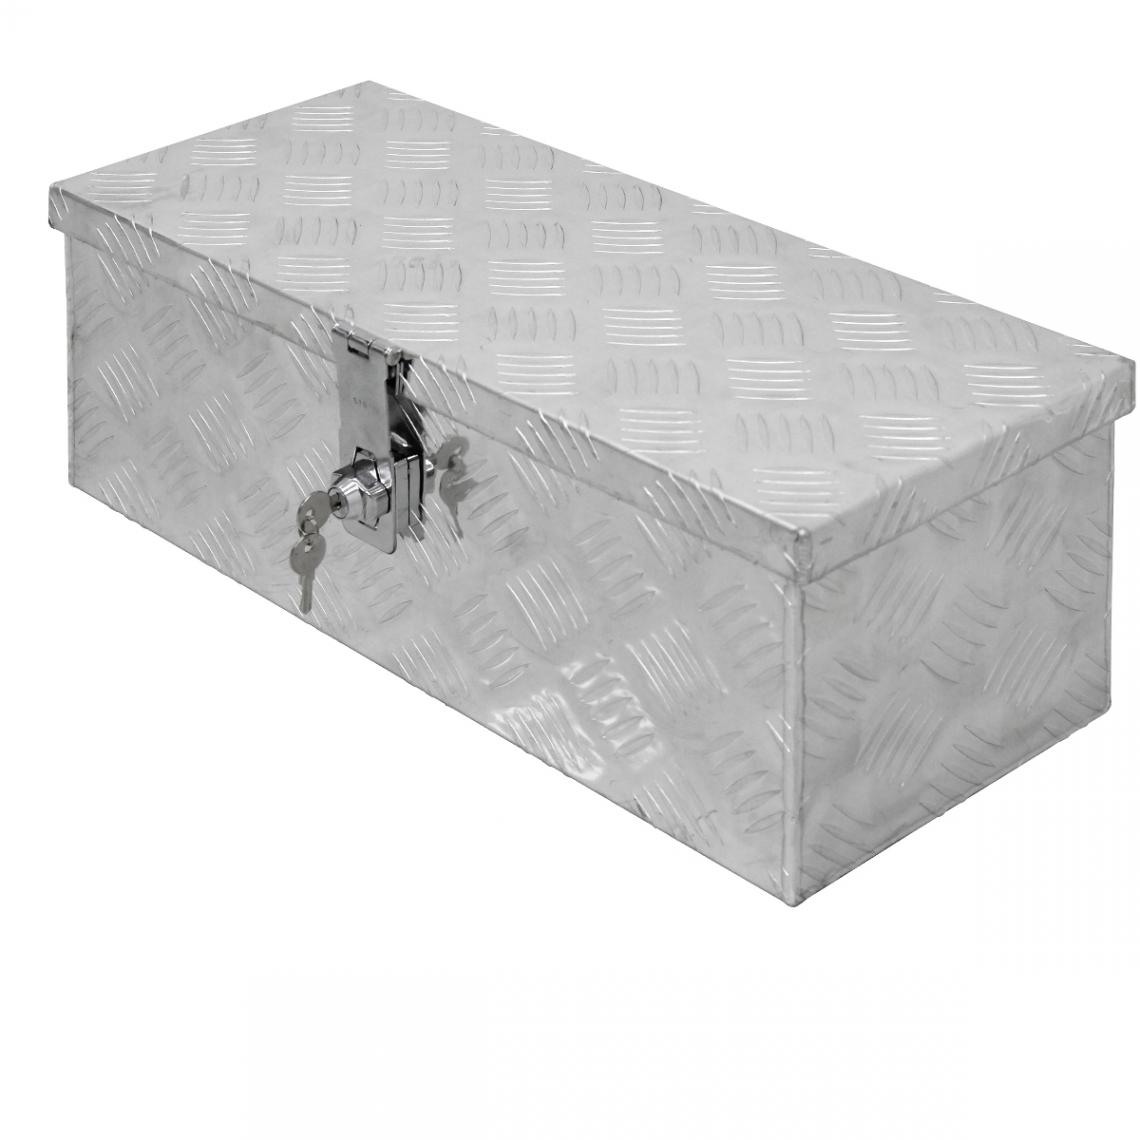 Ecd Germany - Caisse à outils boite transport remorque valise aluminium chequer 57x22x19 cm - Boîtes à outils